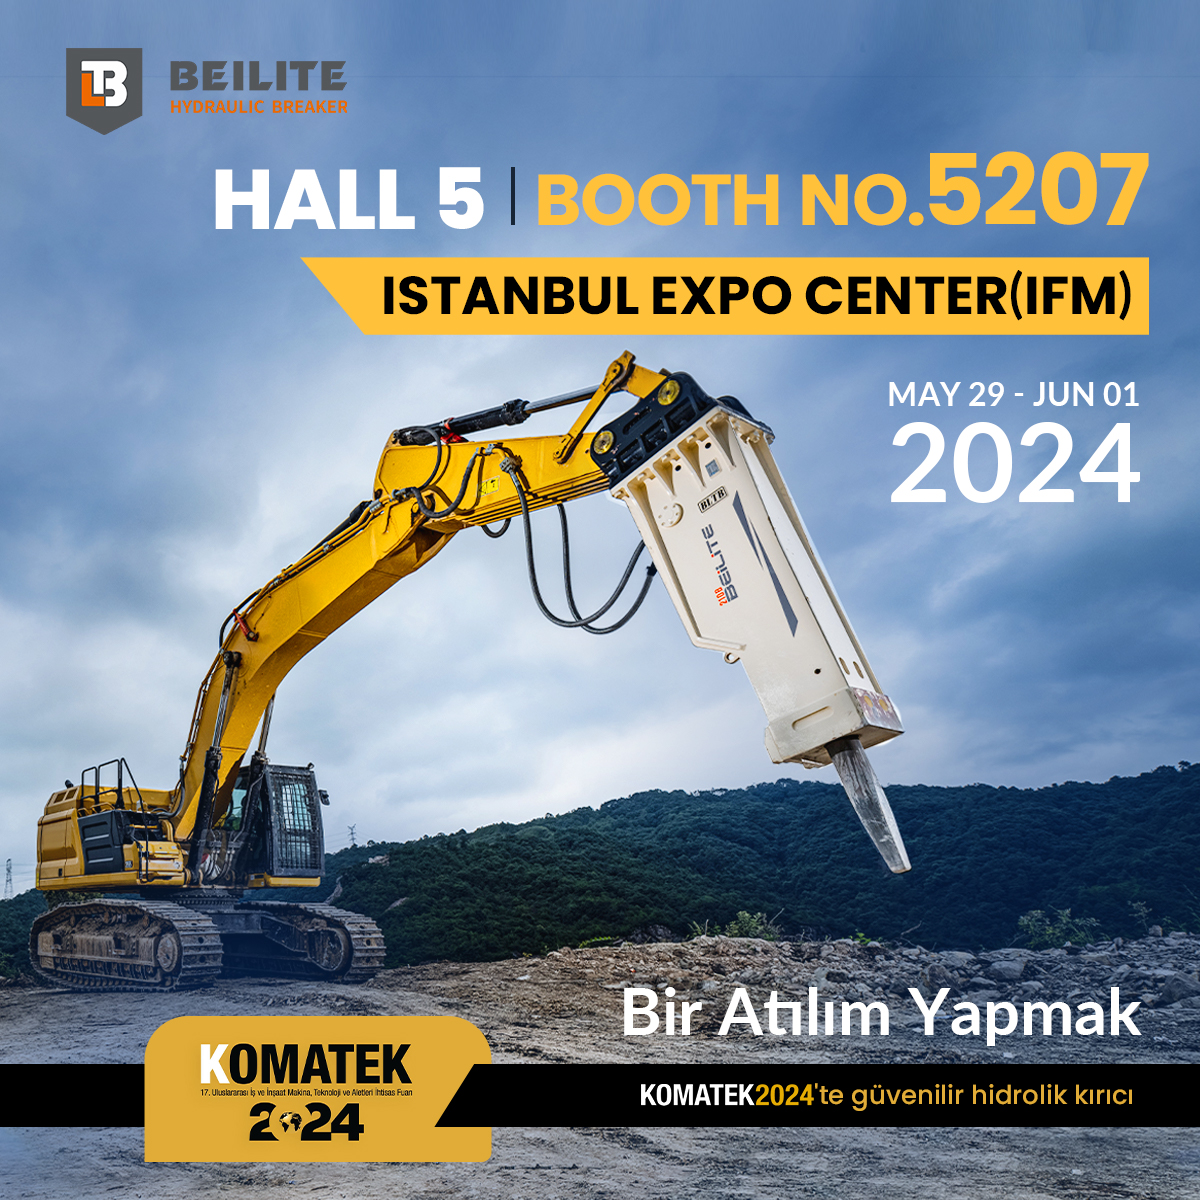 Beilite, İstanbul'daki KOMATEK 2024 etkinliğinde tüm ziyaretçilerle tanışacak olmaktan heyecan duyuyor! Bu sefer, her türlü taş ocağı, yıkım ve inşaat görevi için çok yönlü olan hidrolik kırıcılarımızı, en zorlu ortamlarda bile getireceğiz.
📅Tarih: 2024/05/29-2024/06/01
#Beilite